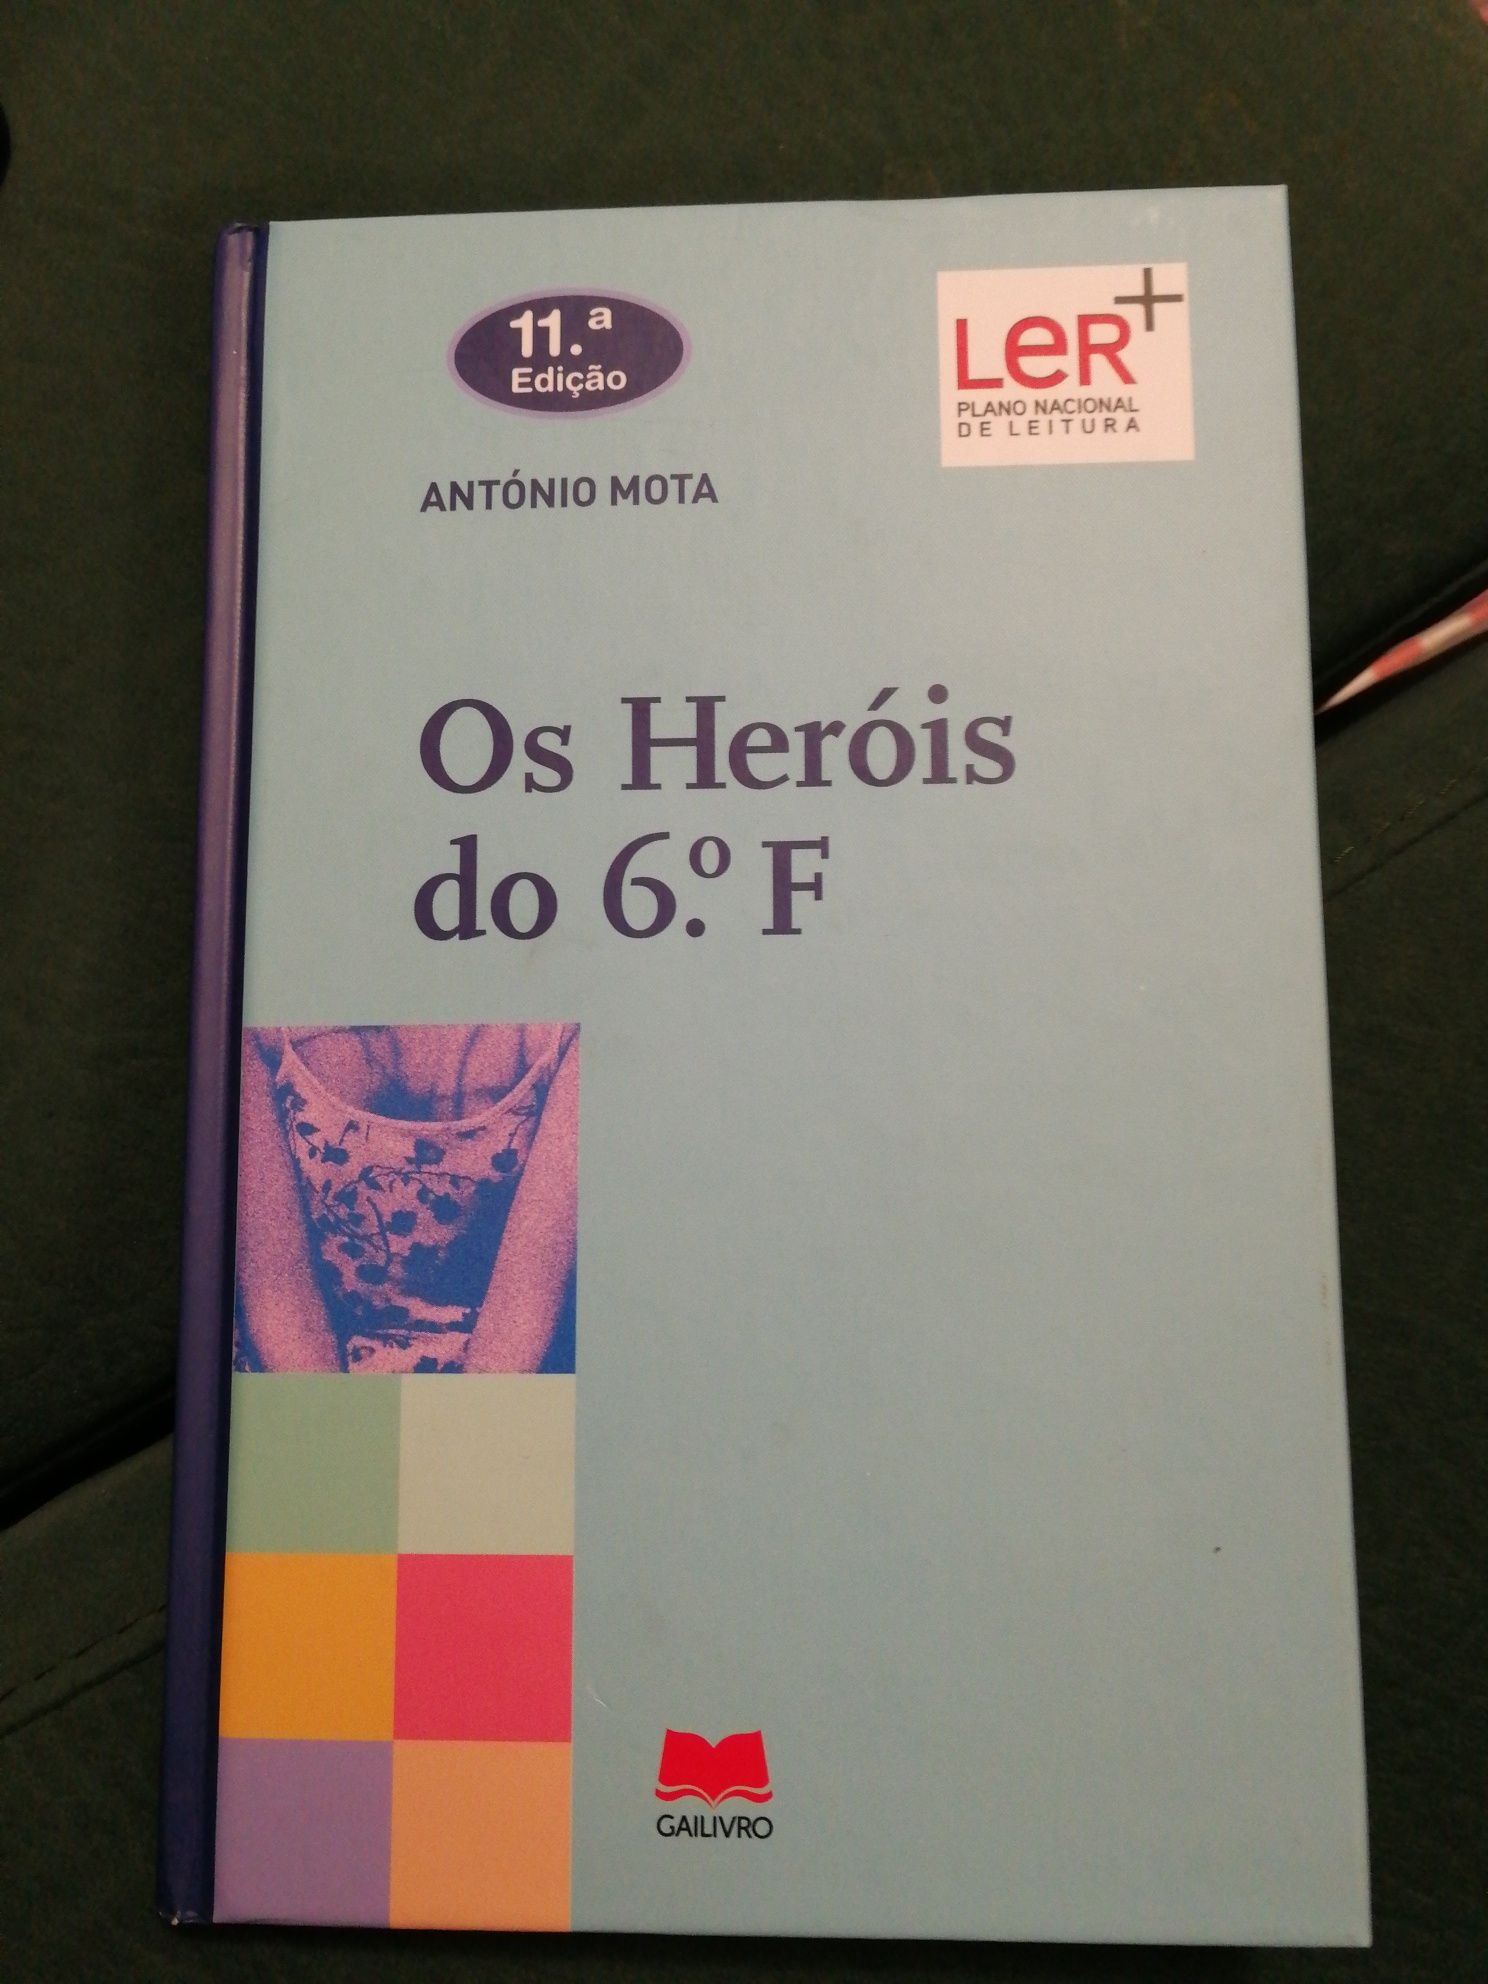 Livro "Os Heróis do 6° F" de António Mota